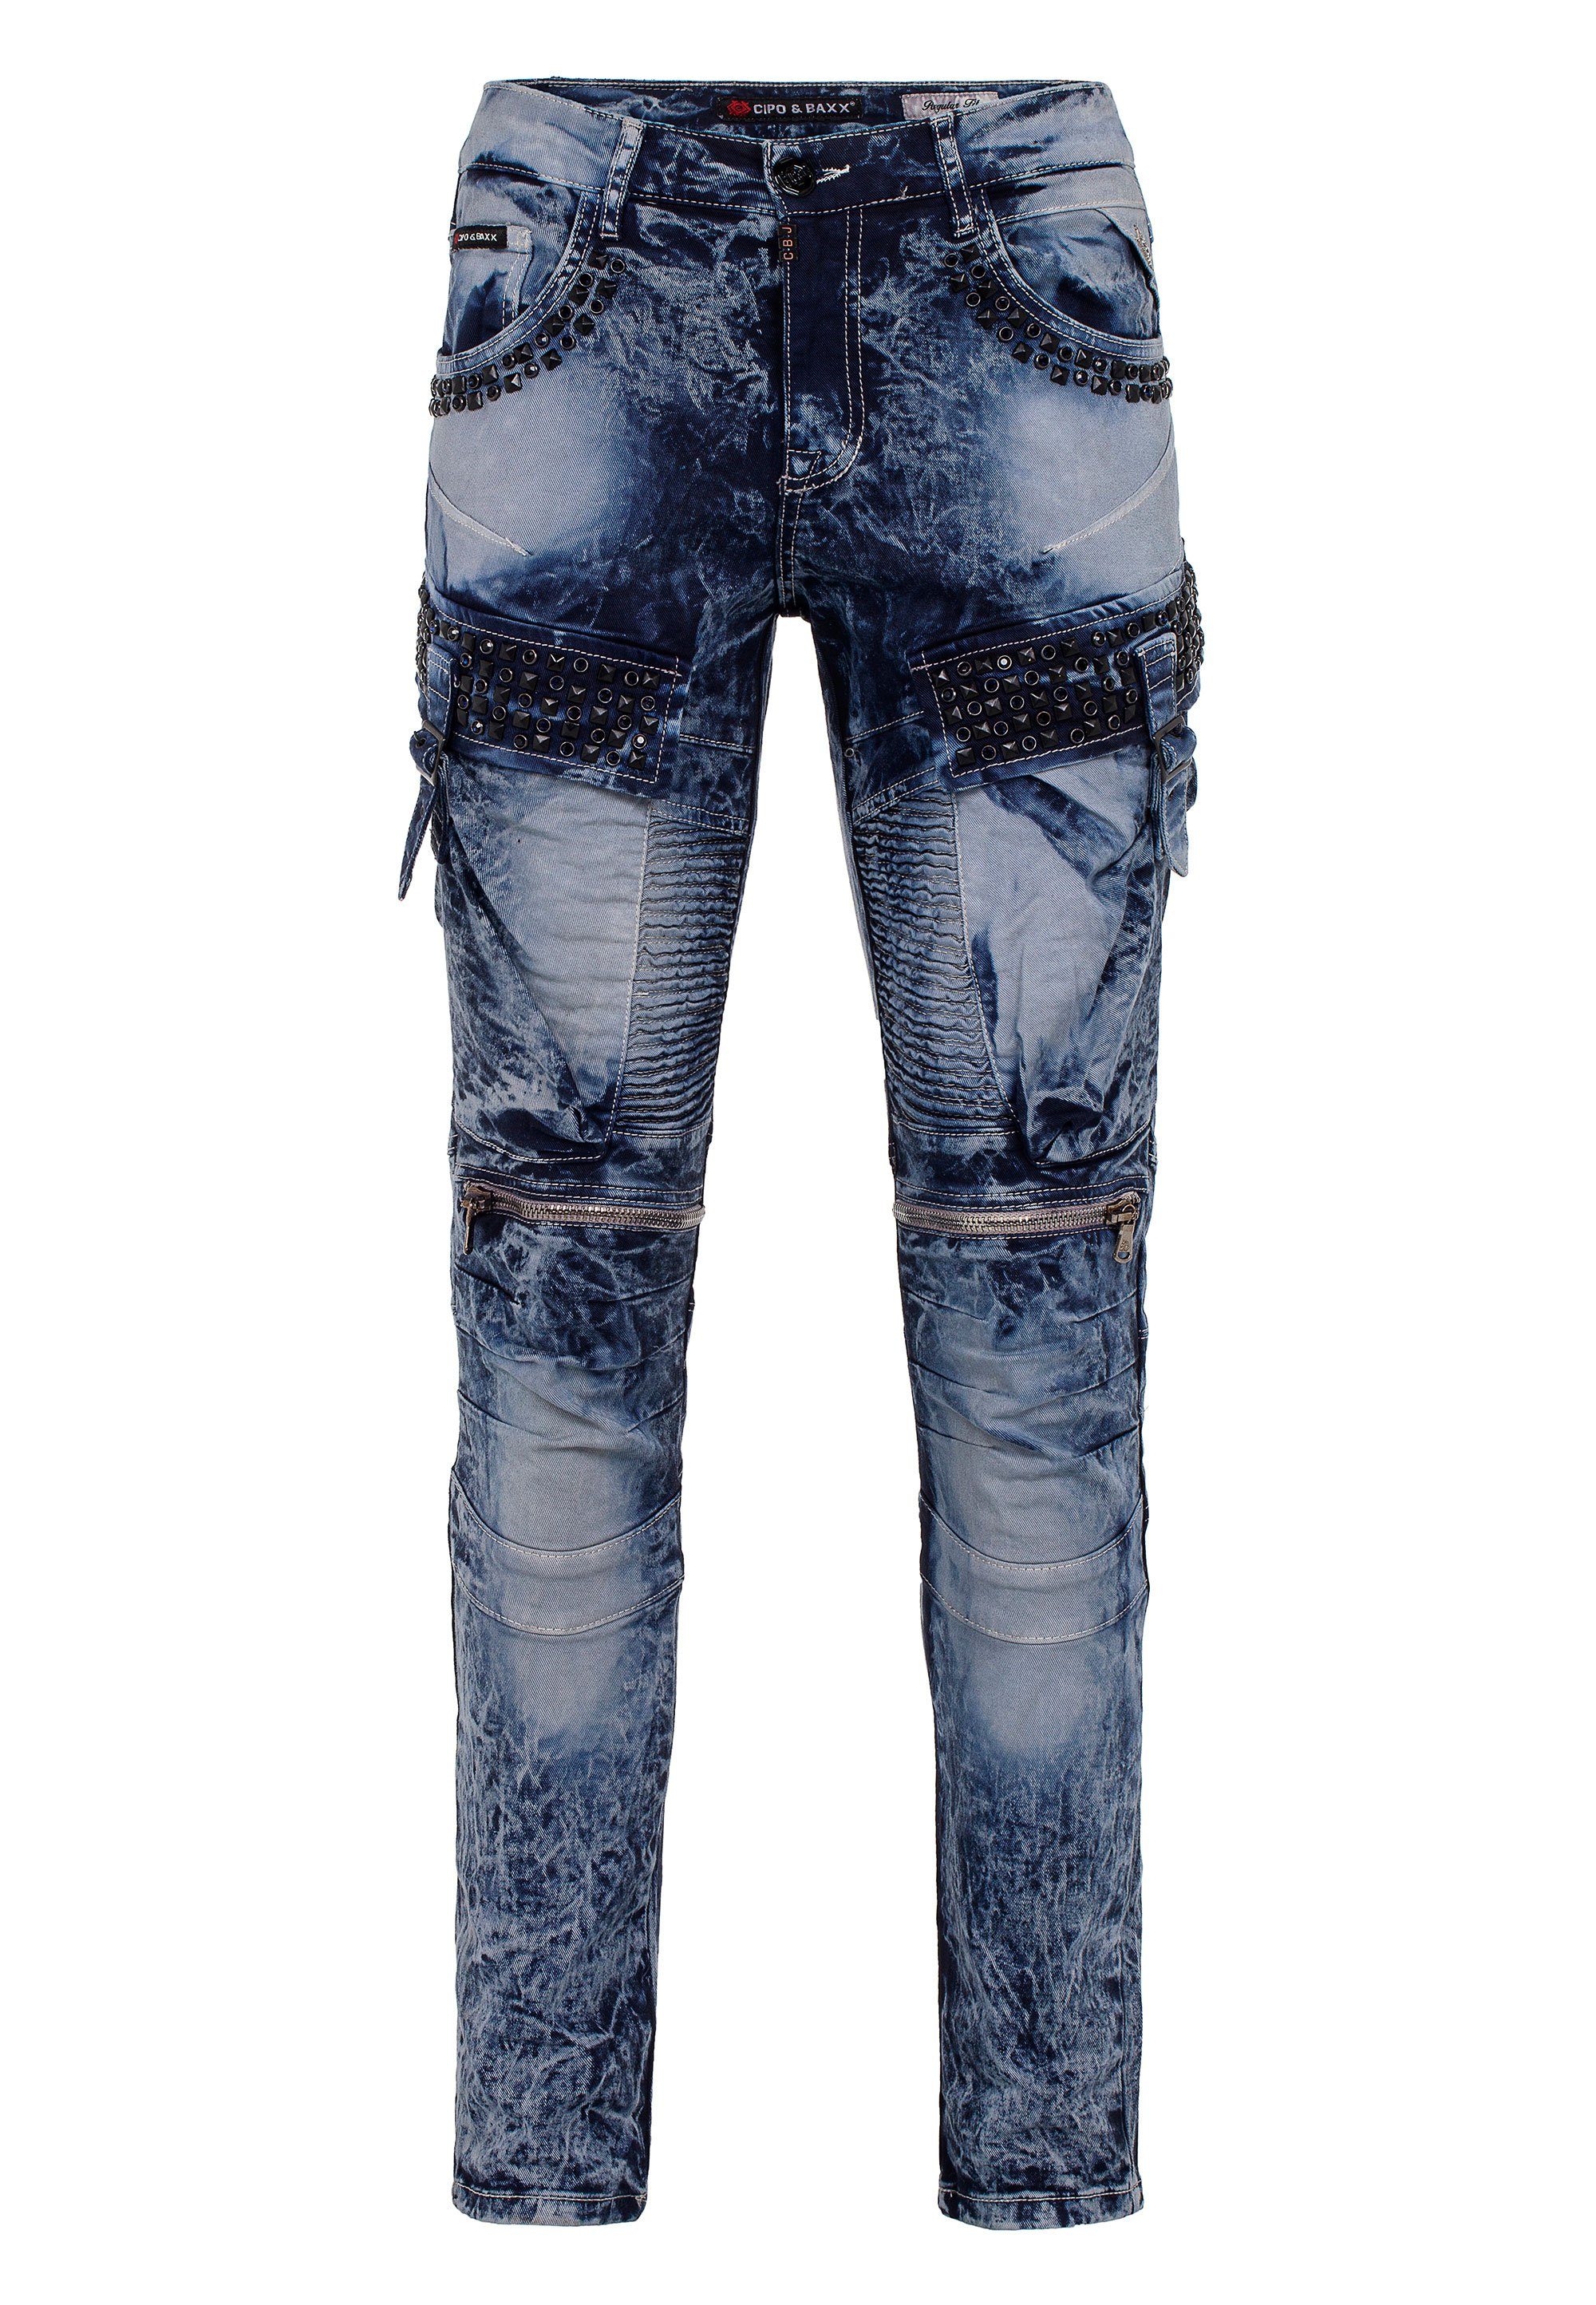 Taschen in Regular Fit Bequeme Cipo & mit blau Jeans Edelstein Baxx